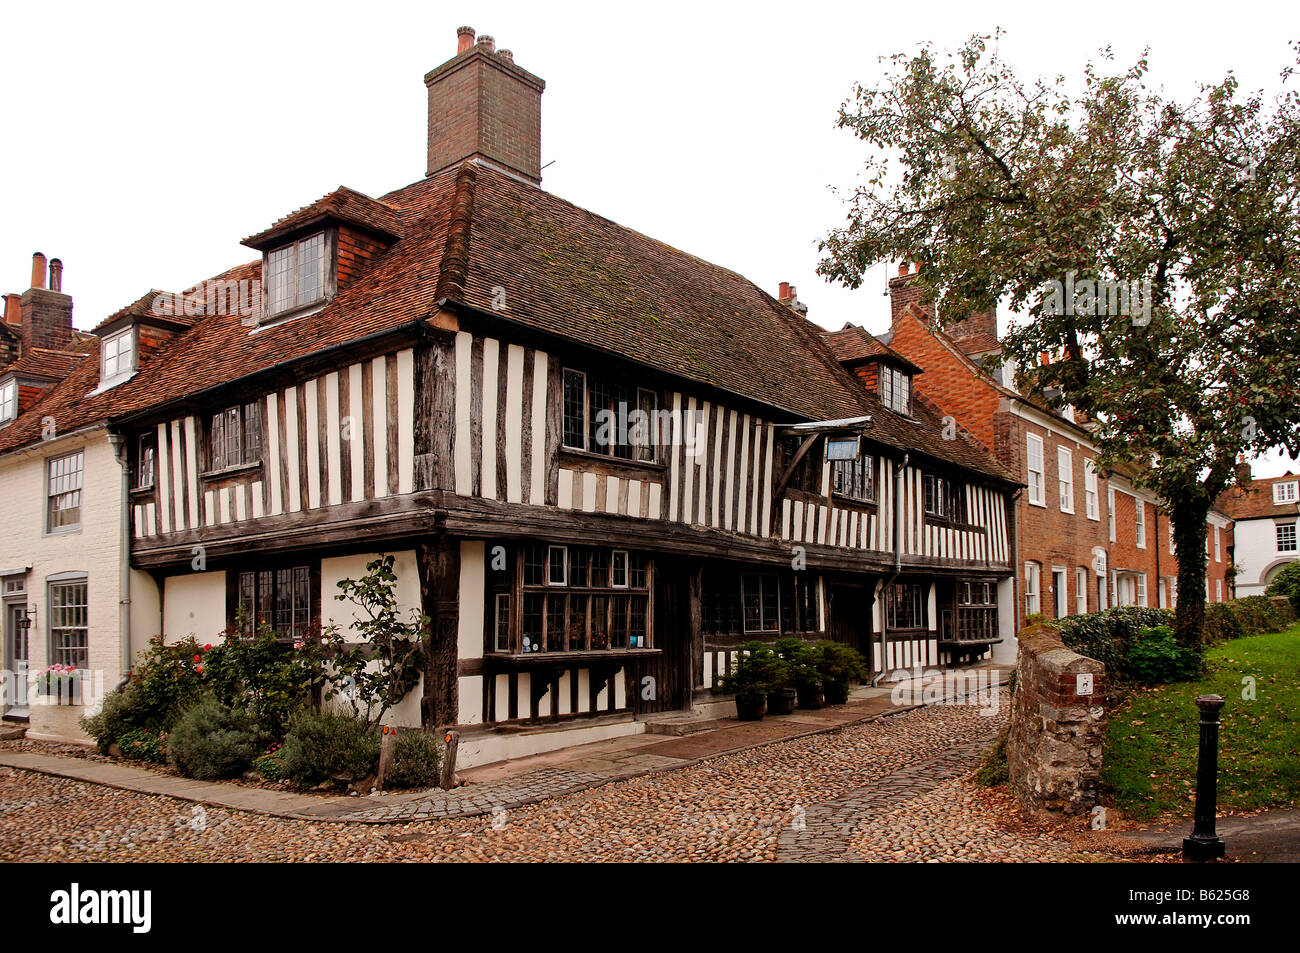 Le vieil anglais maison à colombages, seigle, Sussex, Angleterre, Europe Banque D'Images